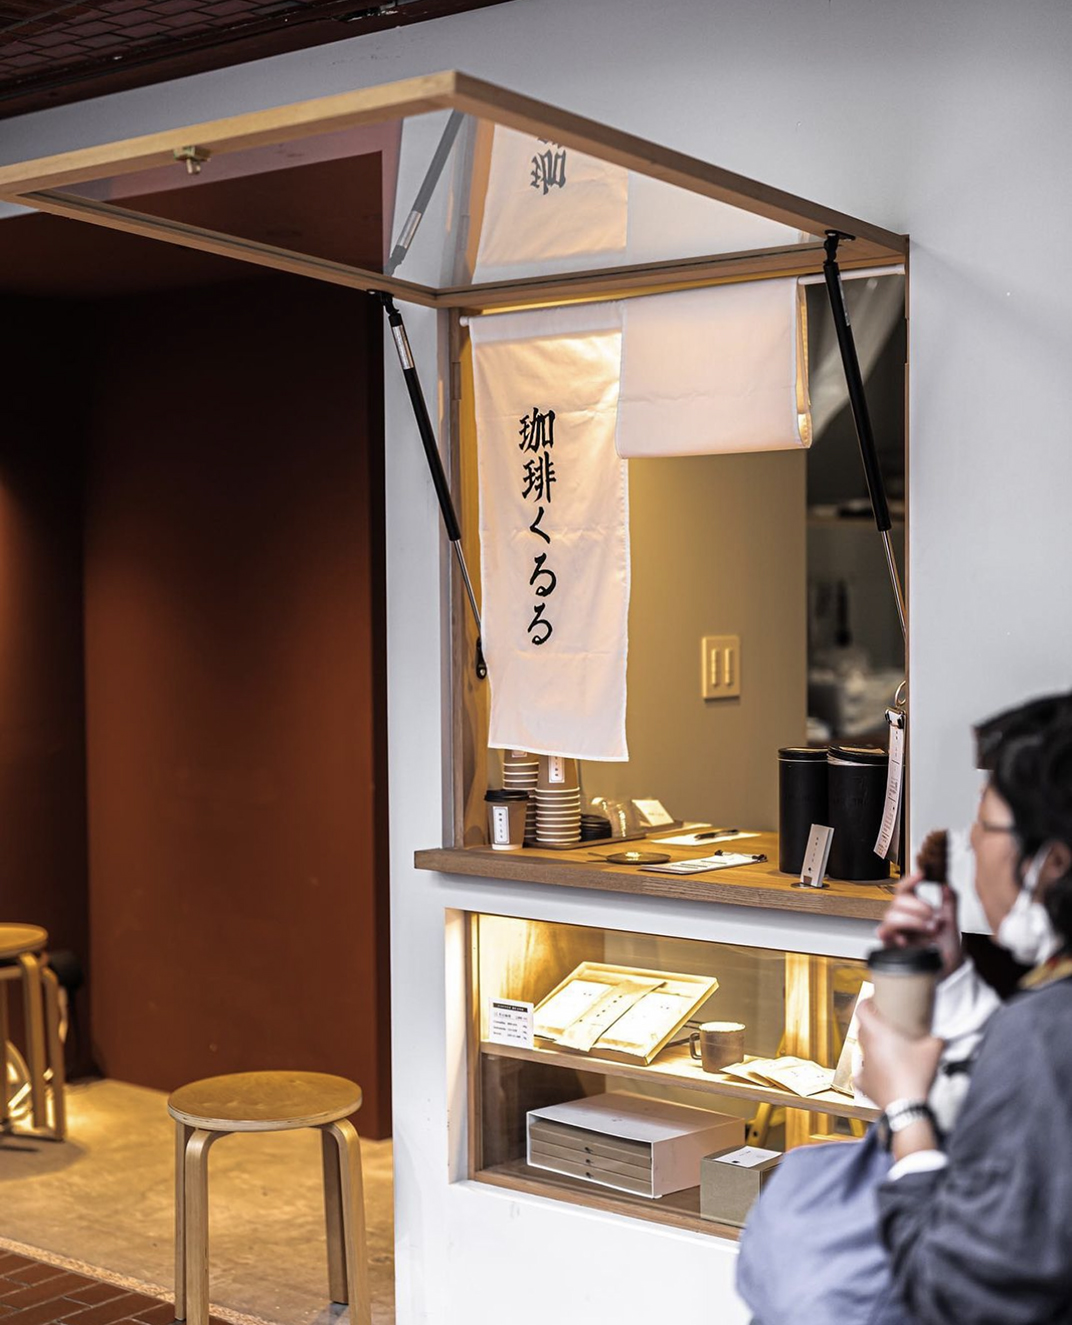 甄选小咖啡店FOOCO COFFEE 日本 北京 上海 成都 武汉 杭州 广州 logo设计 vi设计 空间设计